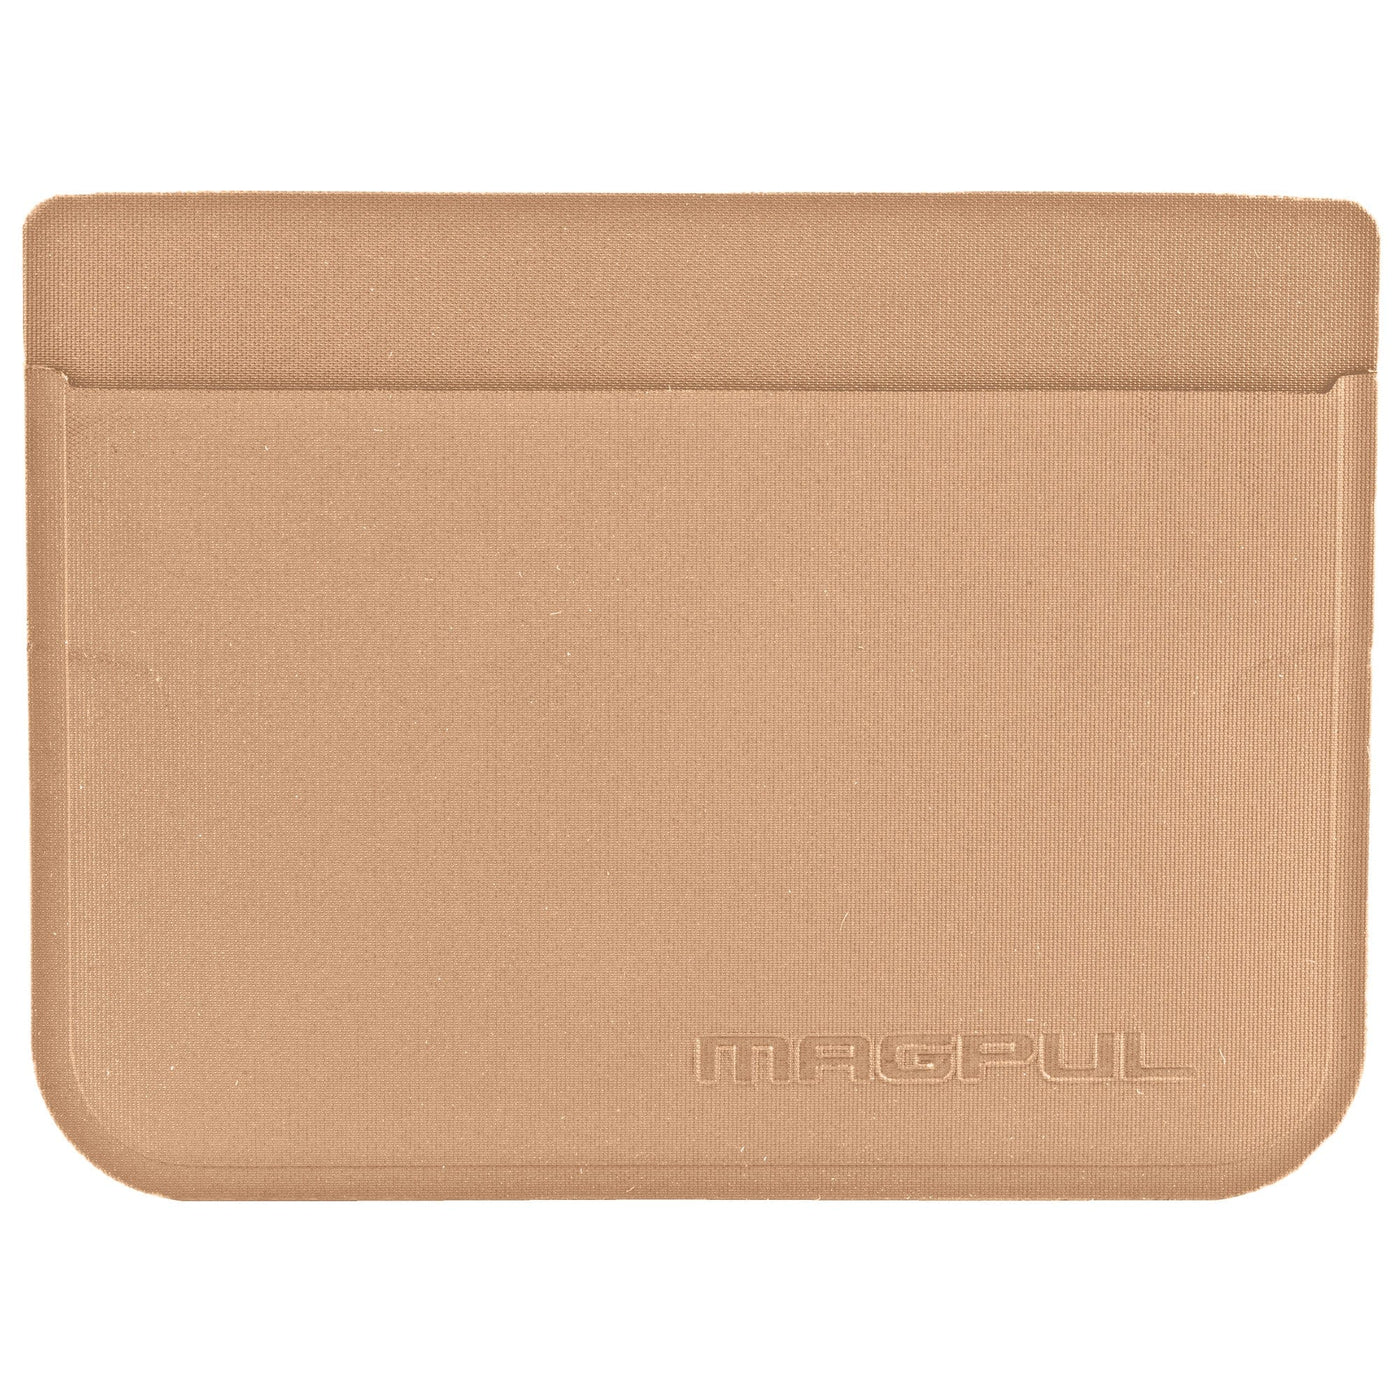 Magpul Industries Magpul Daka Folding Wallet Flat Dark Earth Misc Accessories